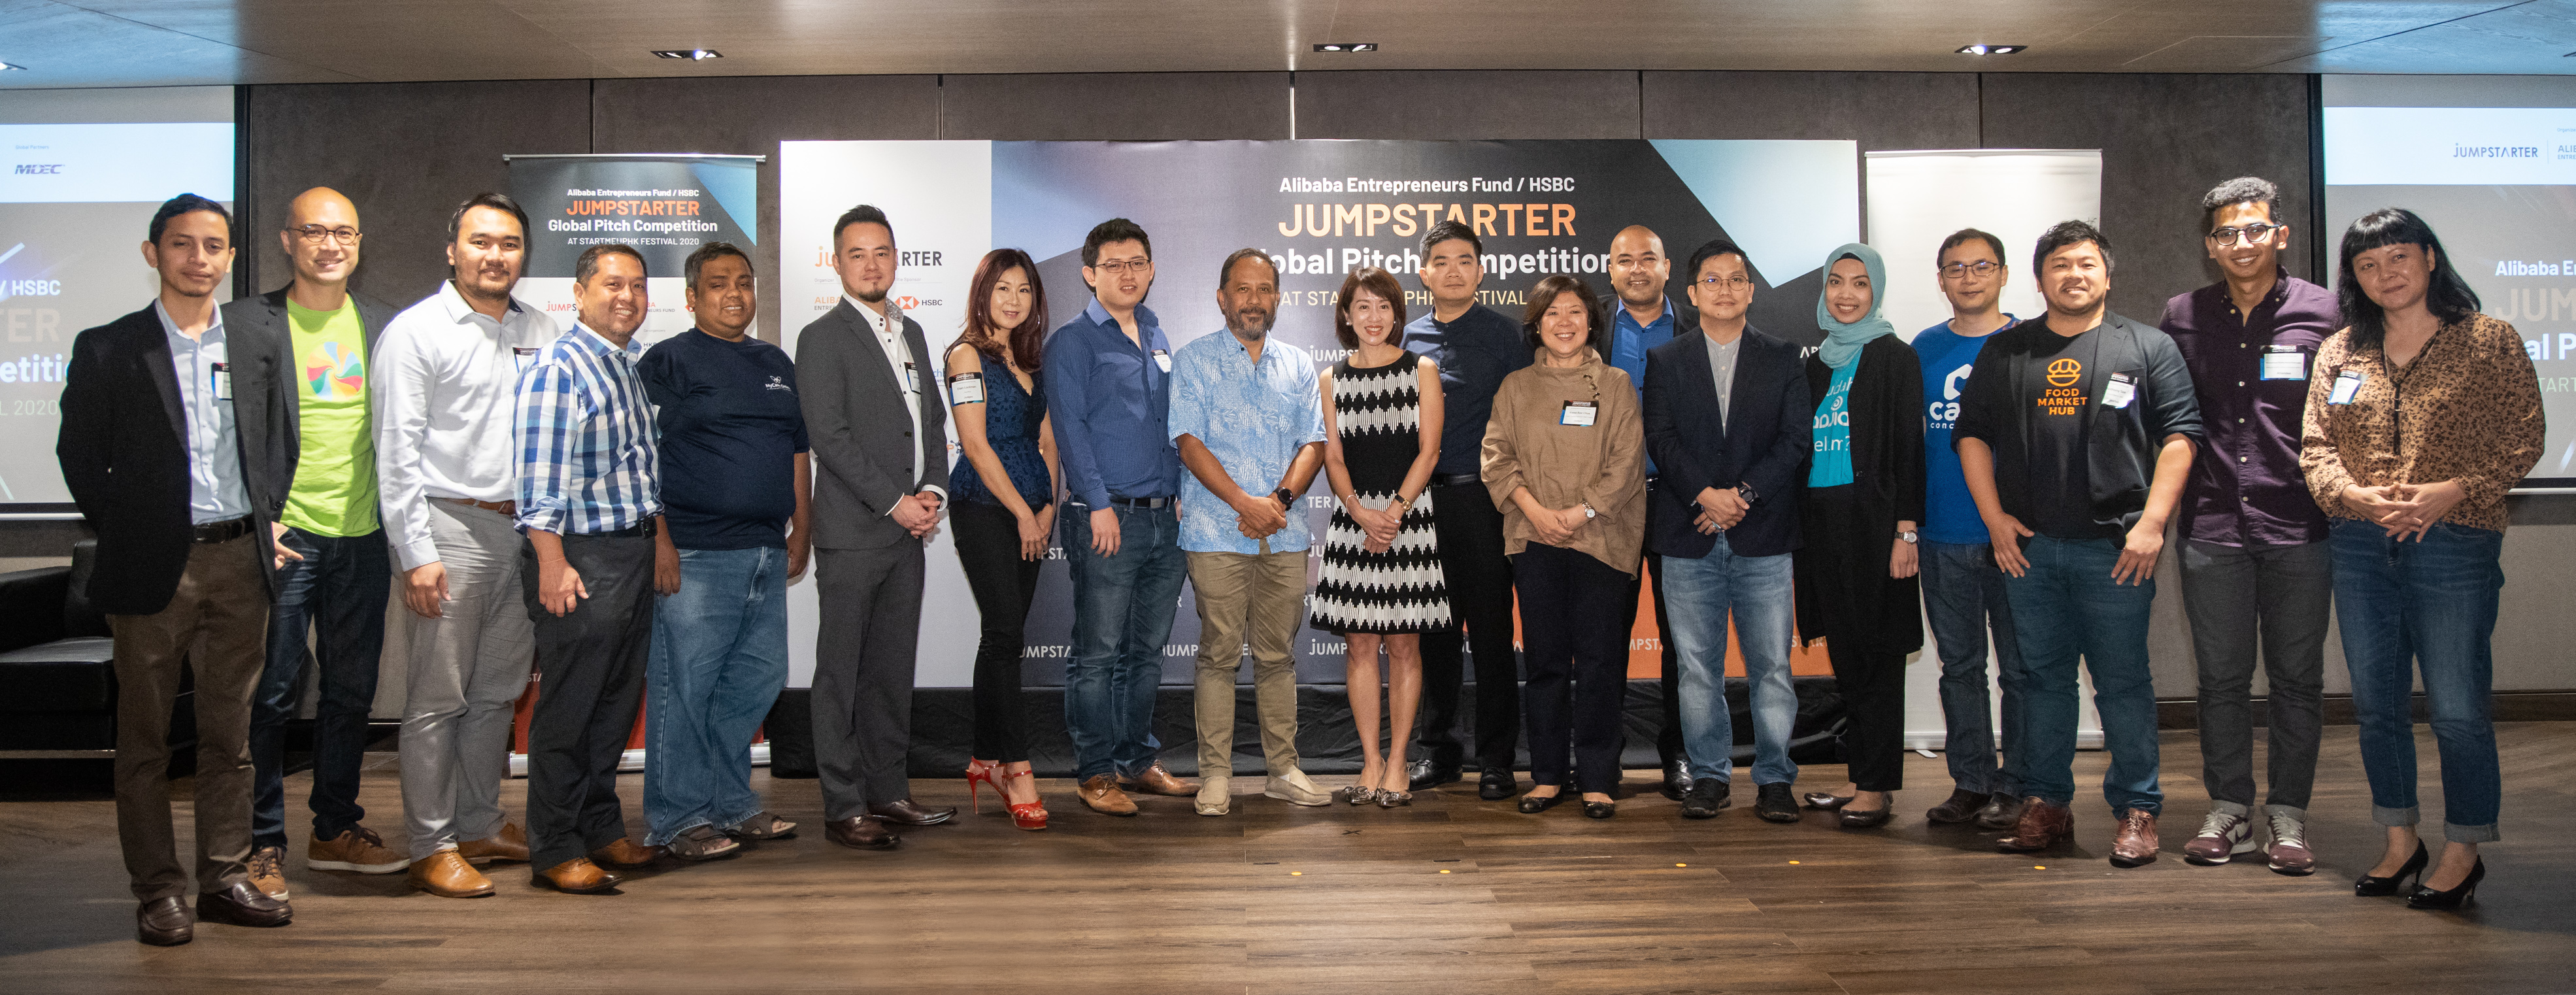 「JUMPSTARTER 2020」八隊來自東南亞的入圍隊伍，在8月28日登上在馬來西亞舉辦的初賽舞台，展示他們在零售、金融服務、智慧城市和先進科技這四個不同領域的潛力。